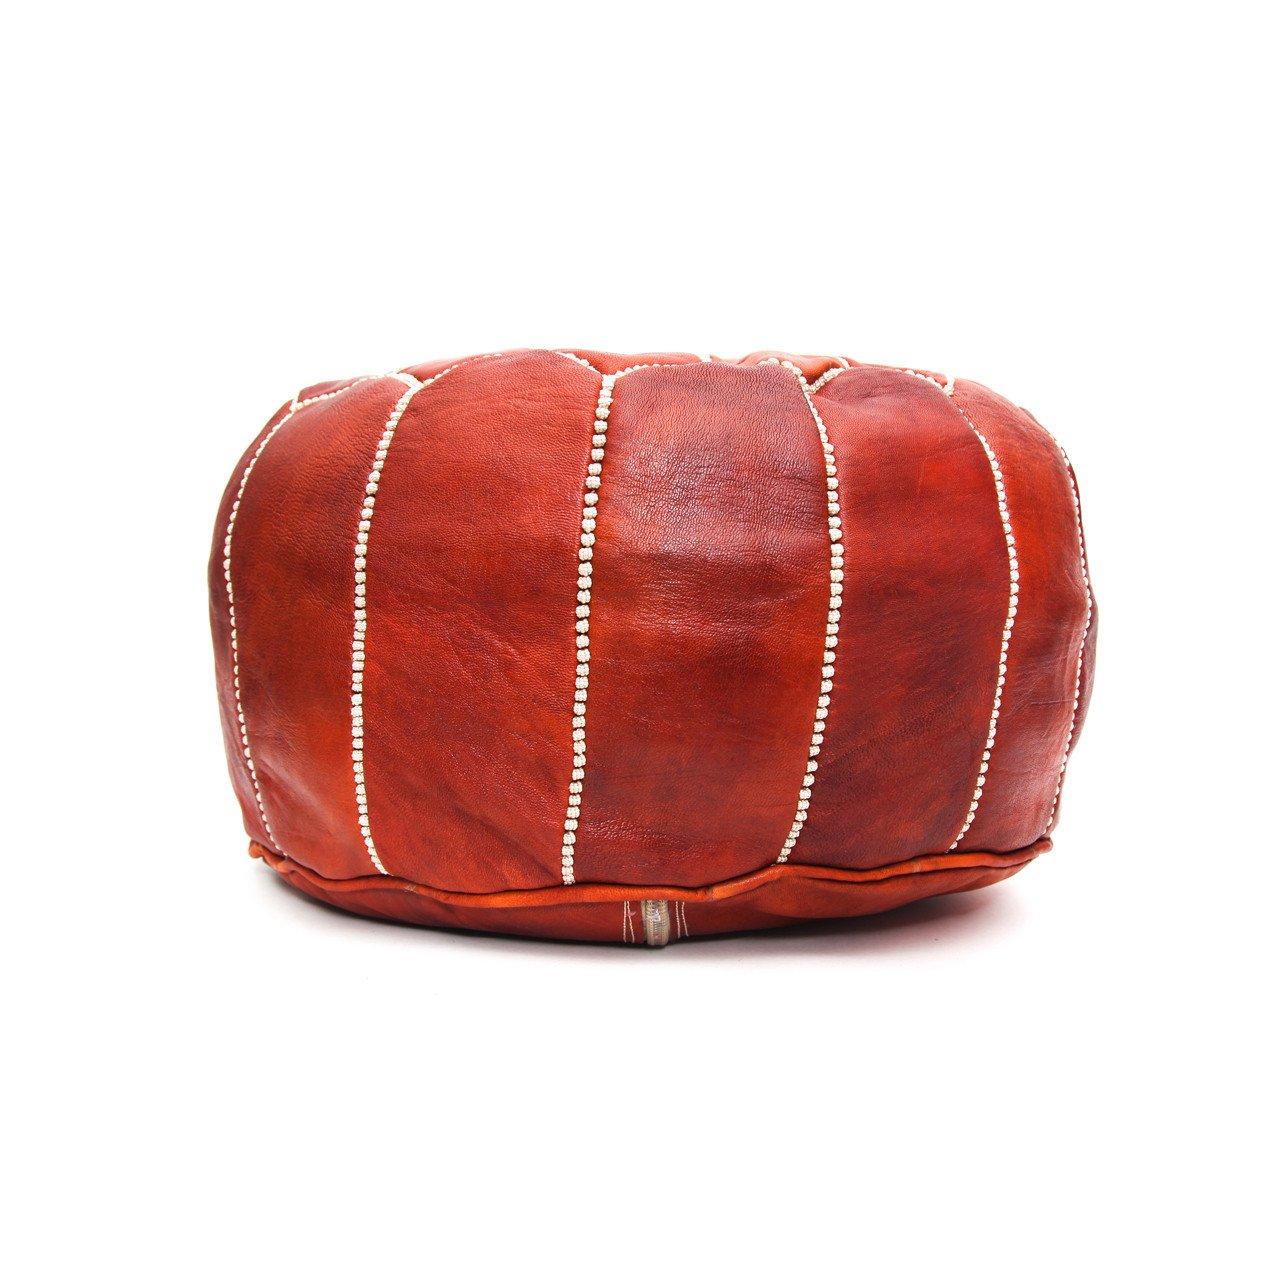 Mauresque Pouf ou ottoman marocain en cuir brun foncé, fait à la main, la paire en vente